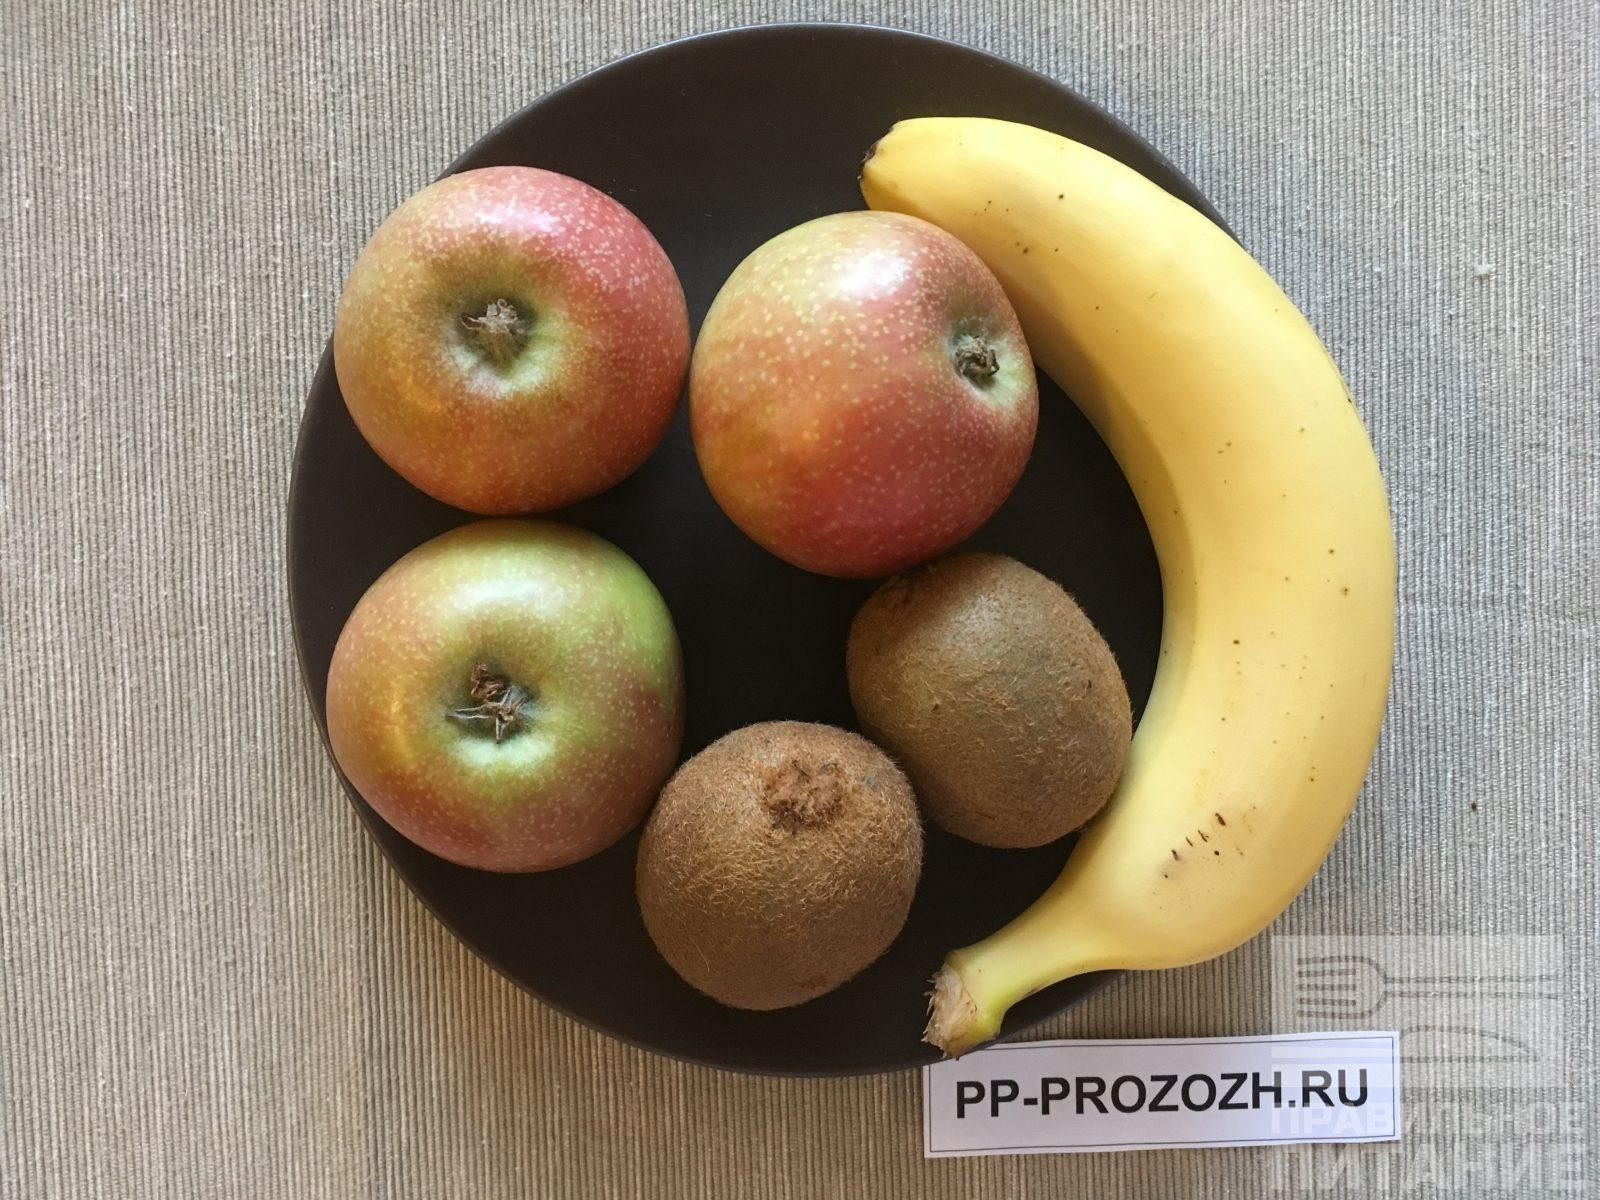 Салат из яблок с йогуртом » Кулинарные рецепты с фотографиями от malino-v.ru